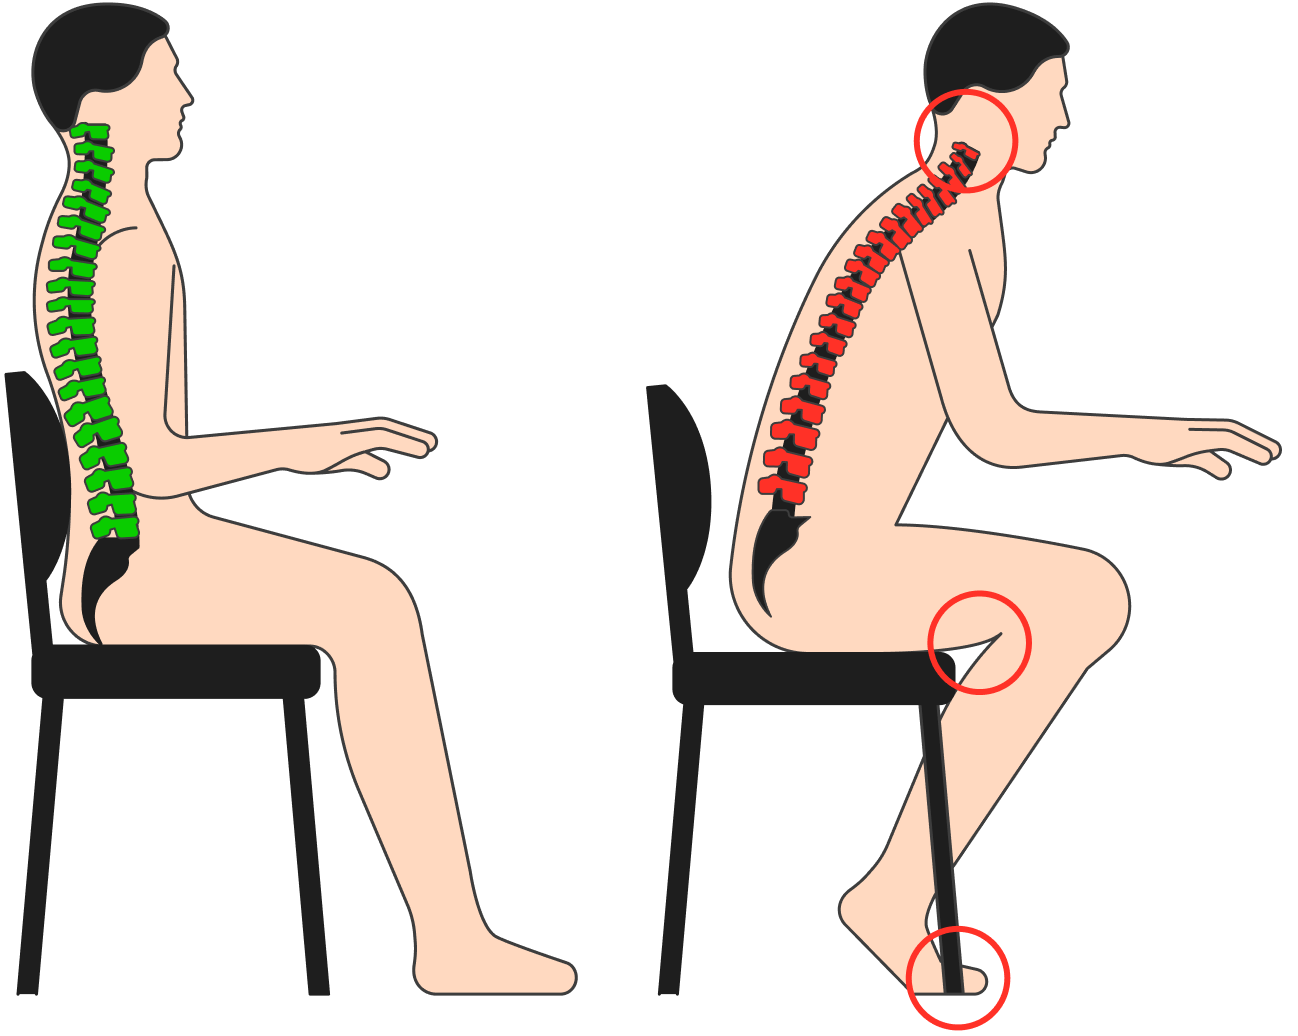 При правильной позе сохраняются все изгибы позвоночника. Напряжение в мышцах спины есть, оно распределяется вдоль всей спины и шеи. Когда мы сутулимся, грудной и поясничный изгибы сглаживаются, а шейный изгиб становится избыточным. При этом мышцы спины перенапрягаются и к концу дня будут болеть, а мышцы пресса расслабляются